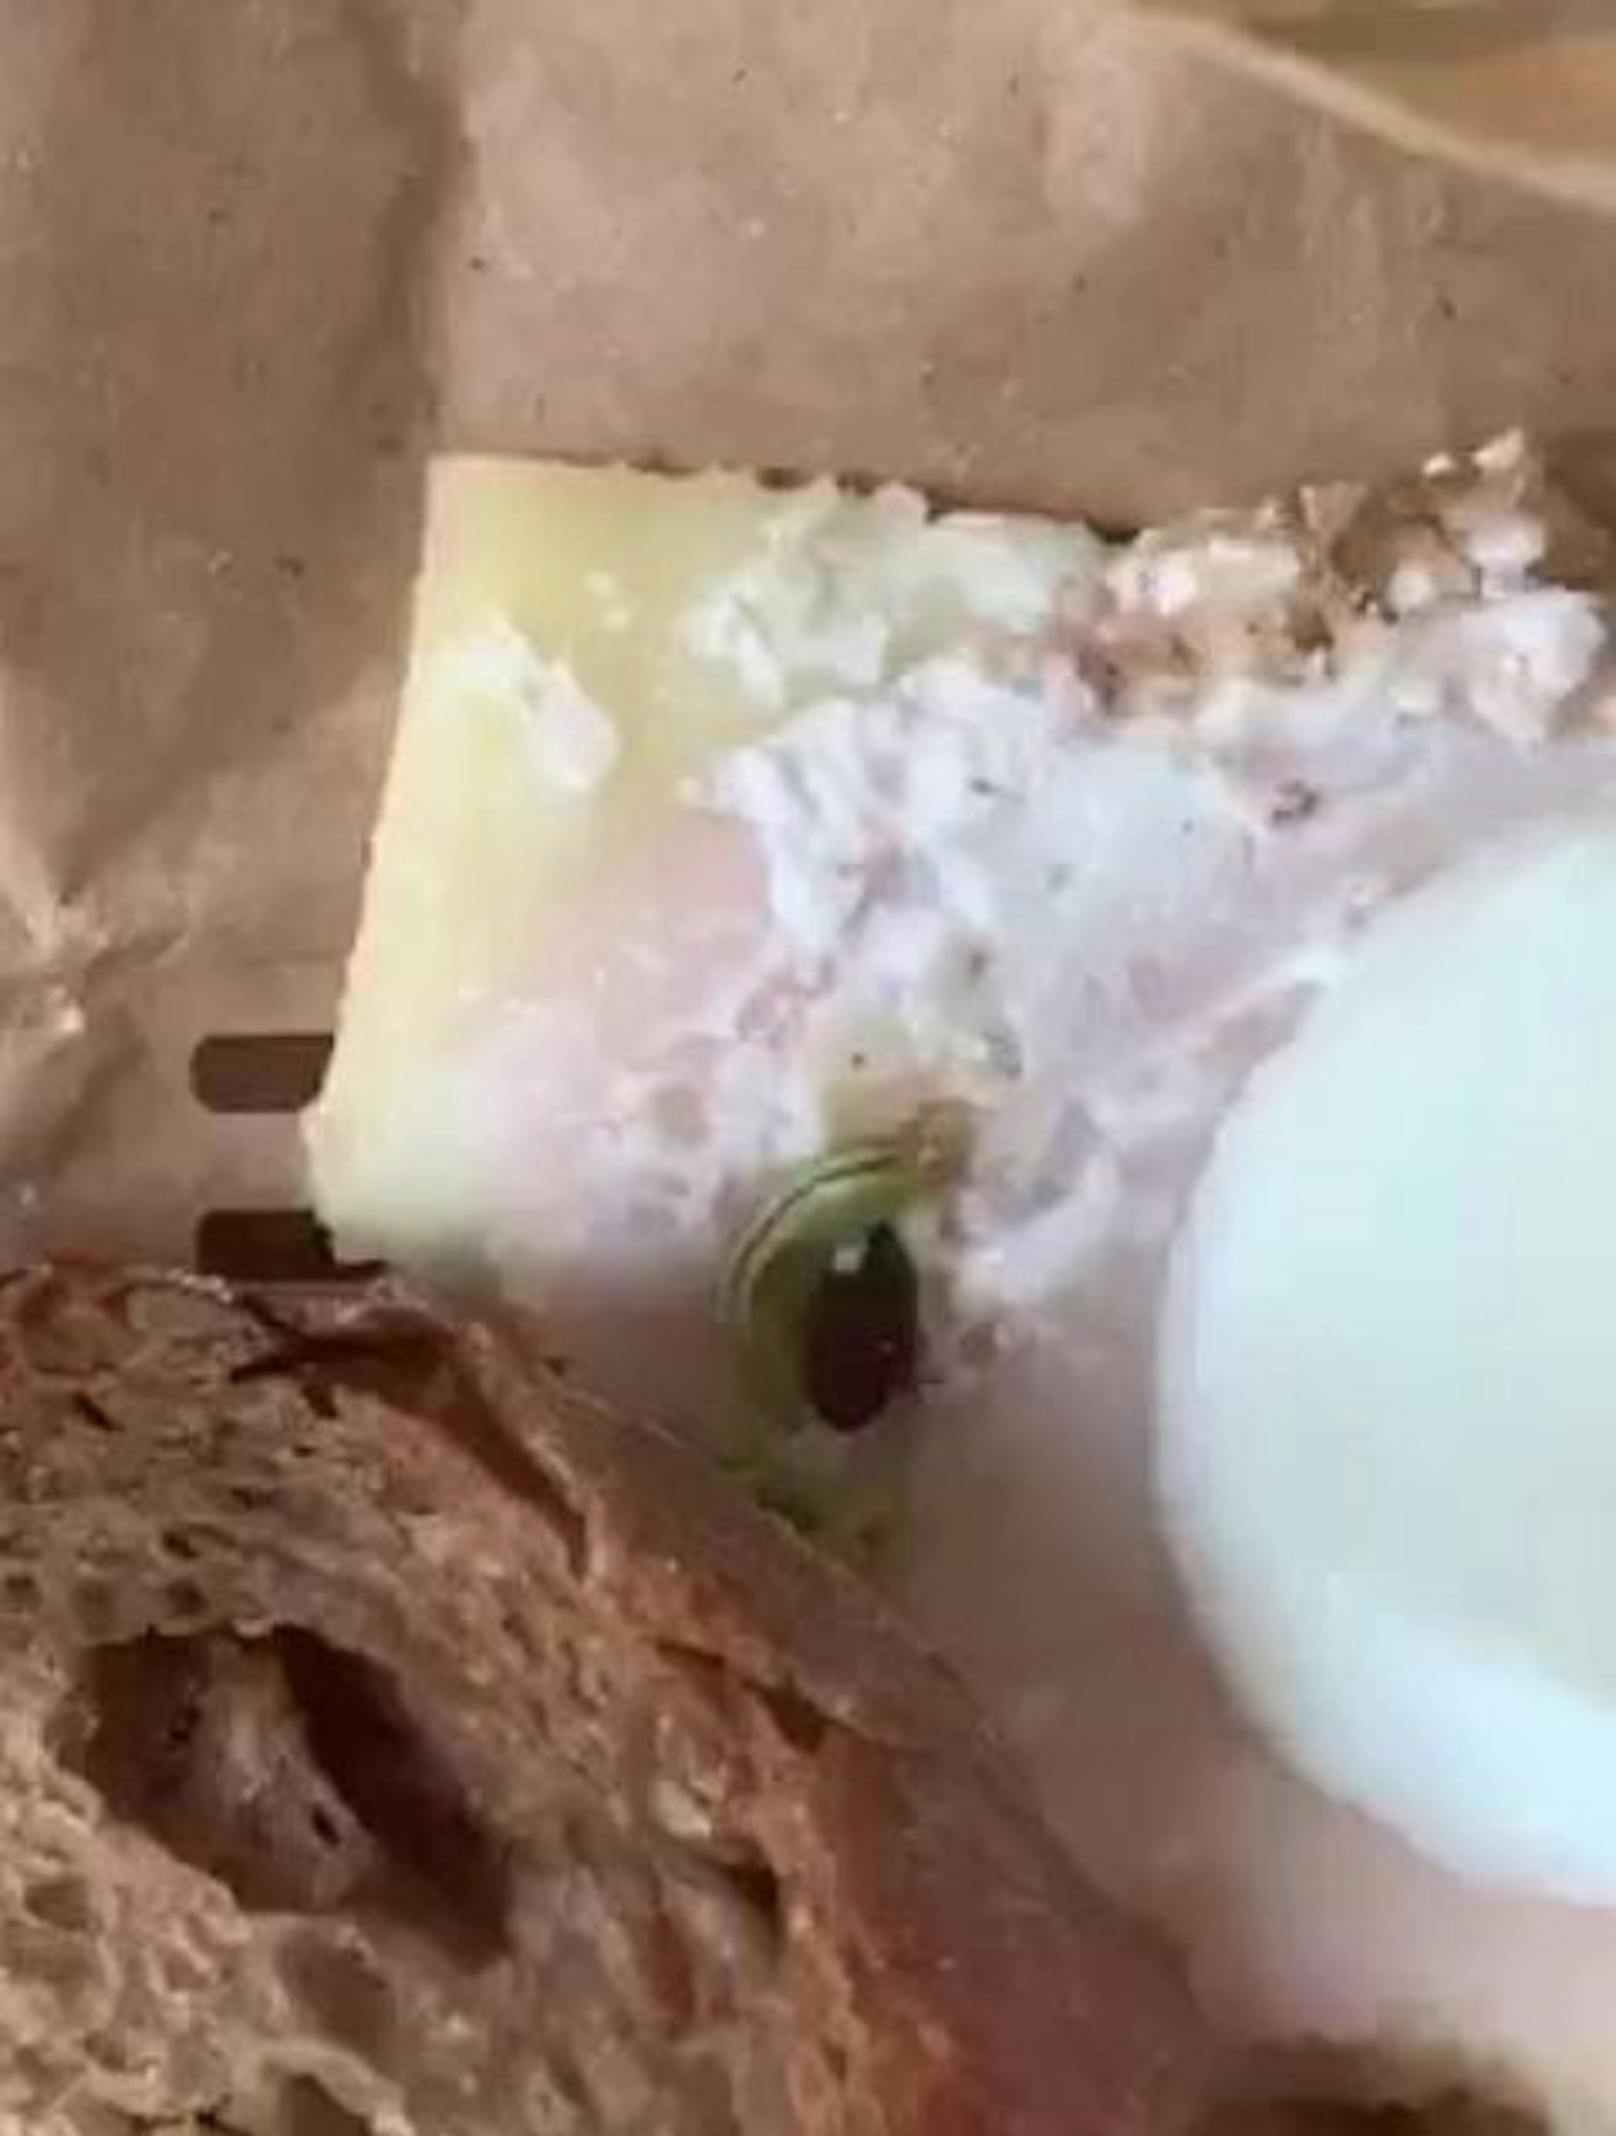 Nachdem Liza (24) schon das halbe Brot aß, entdeckte sie die Raupe in ihrem Backwerk-Sandwich.